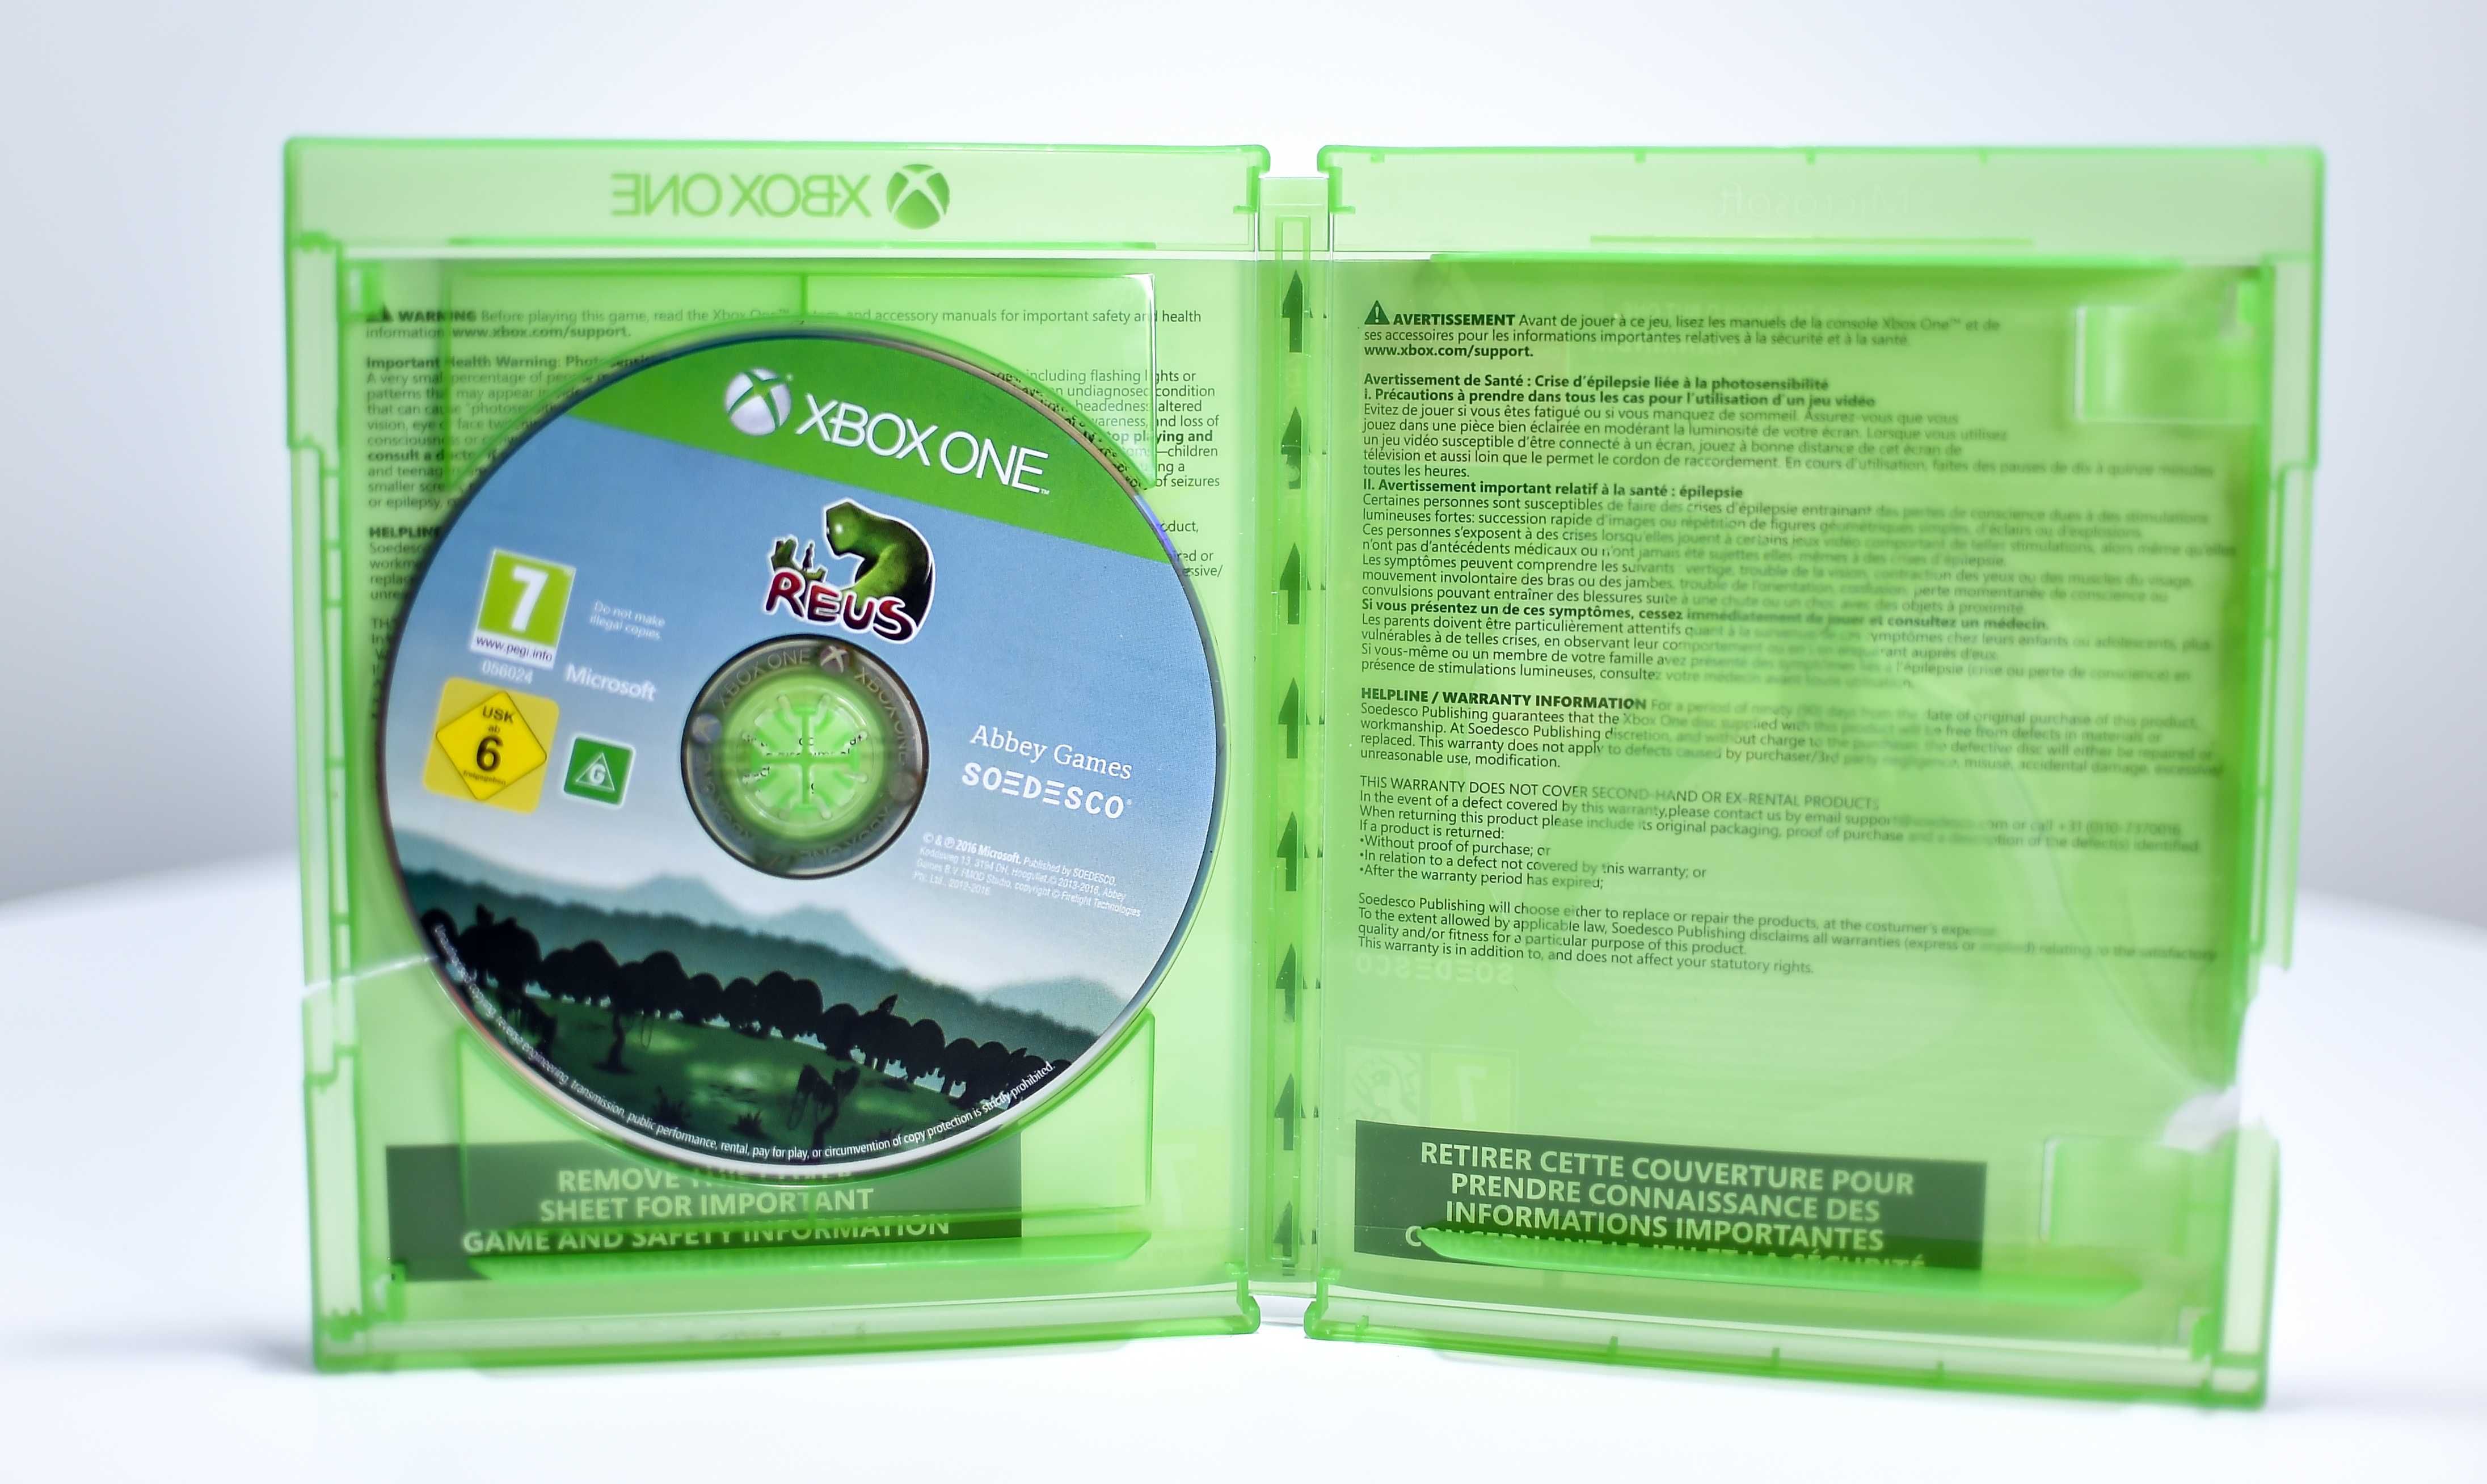 Gra Xbox One # Reus